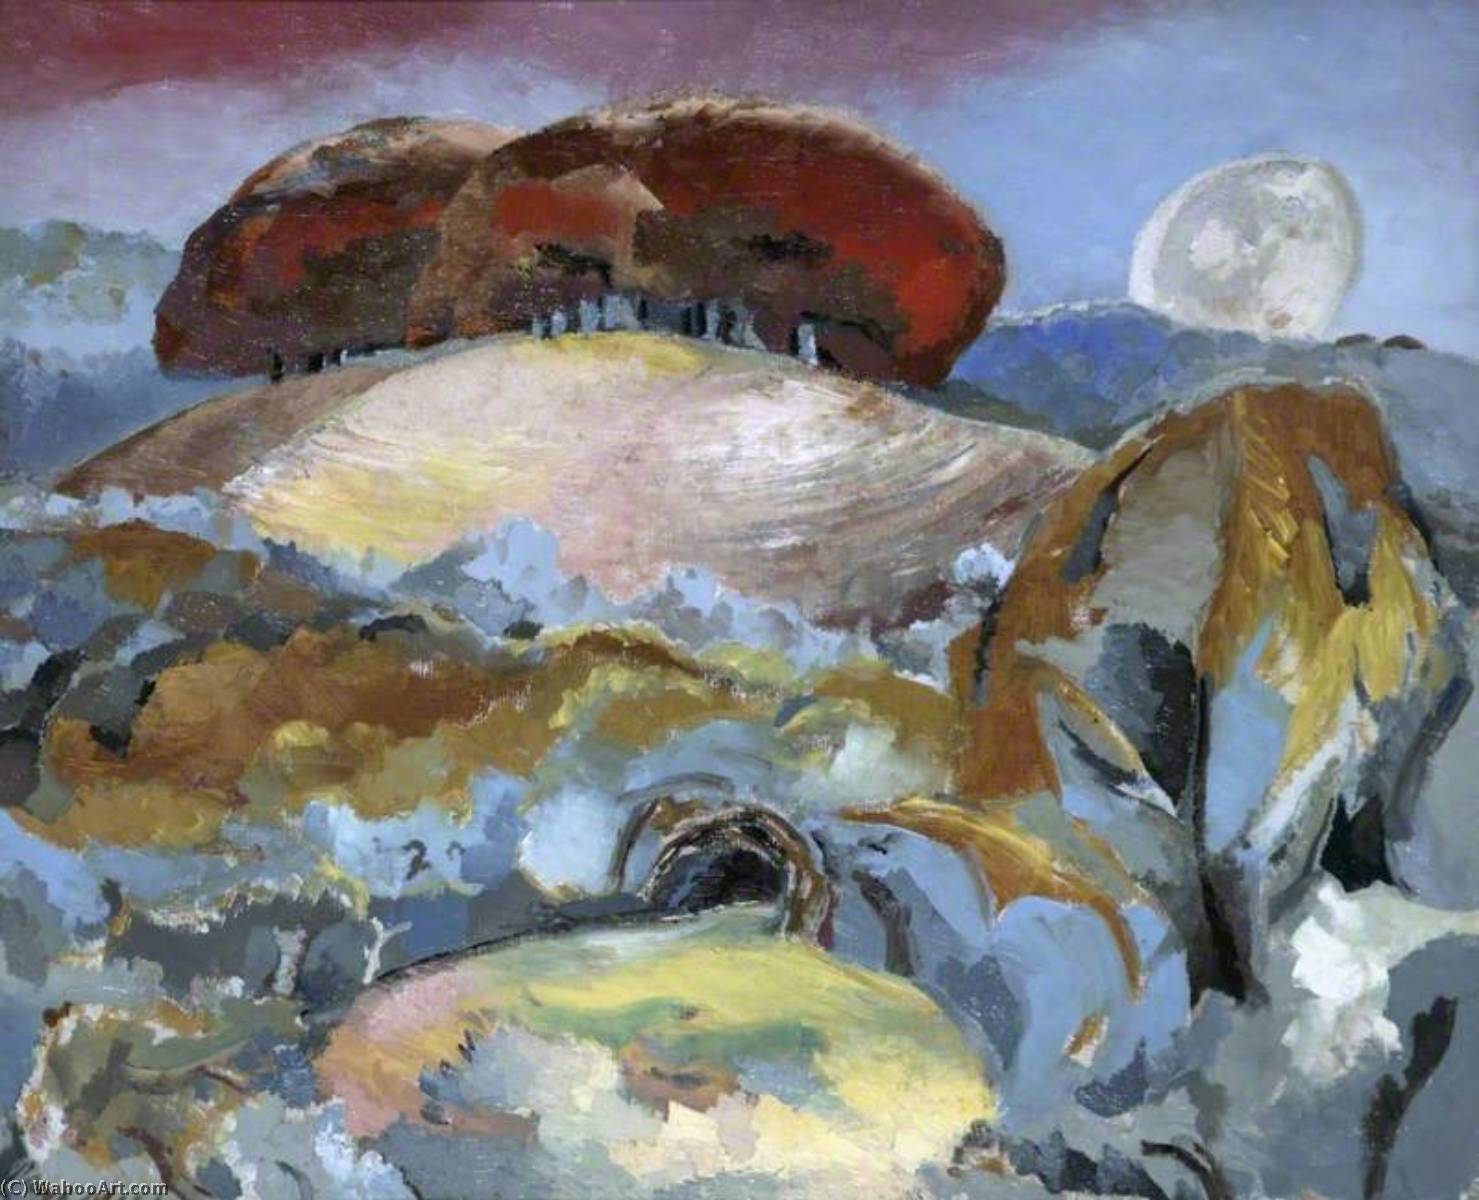 Acheter Reproductions D'art De Musée Paysage de la dernière phase de la Lune, 1944 de Paul Nash (1889-1946, United Kingdom) | ArtsDot.com